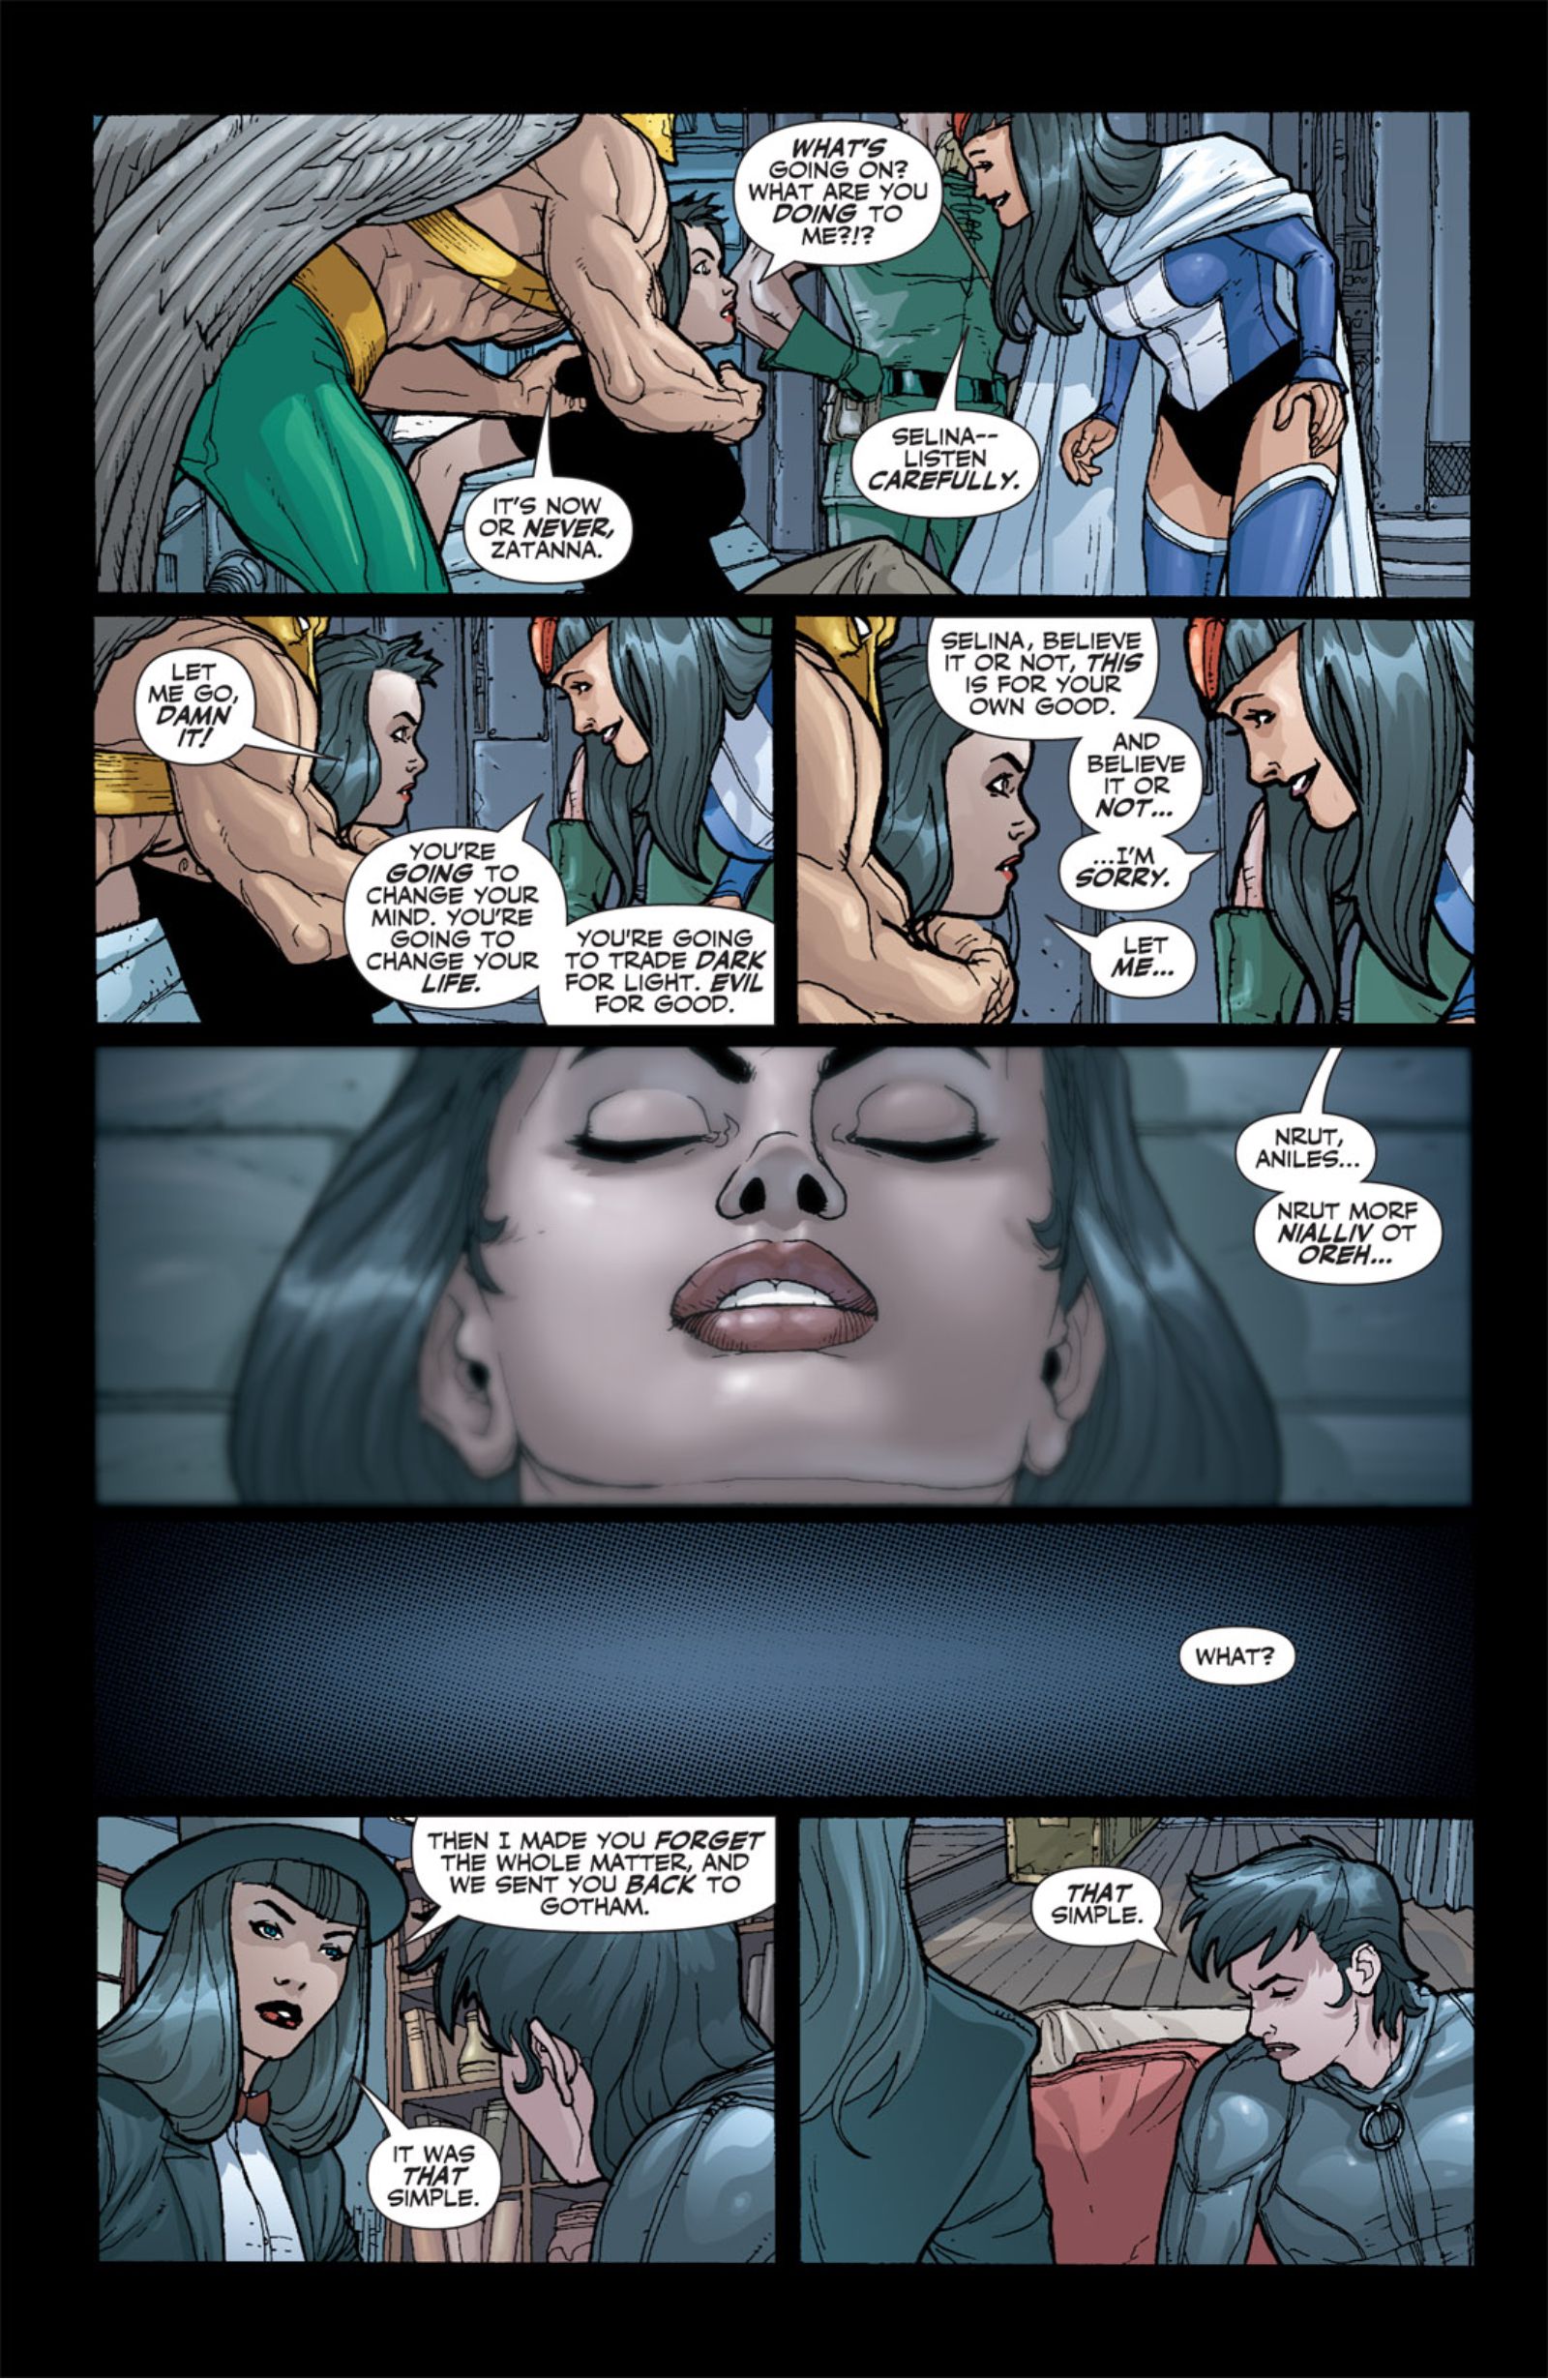 Zatanna wiped Catwomans mind